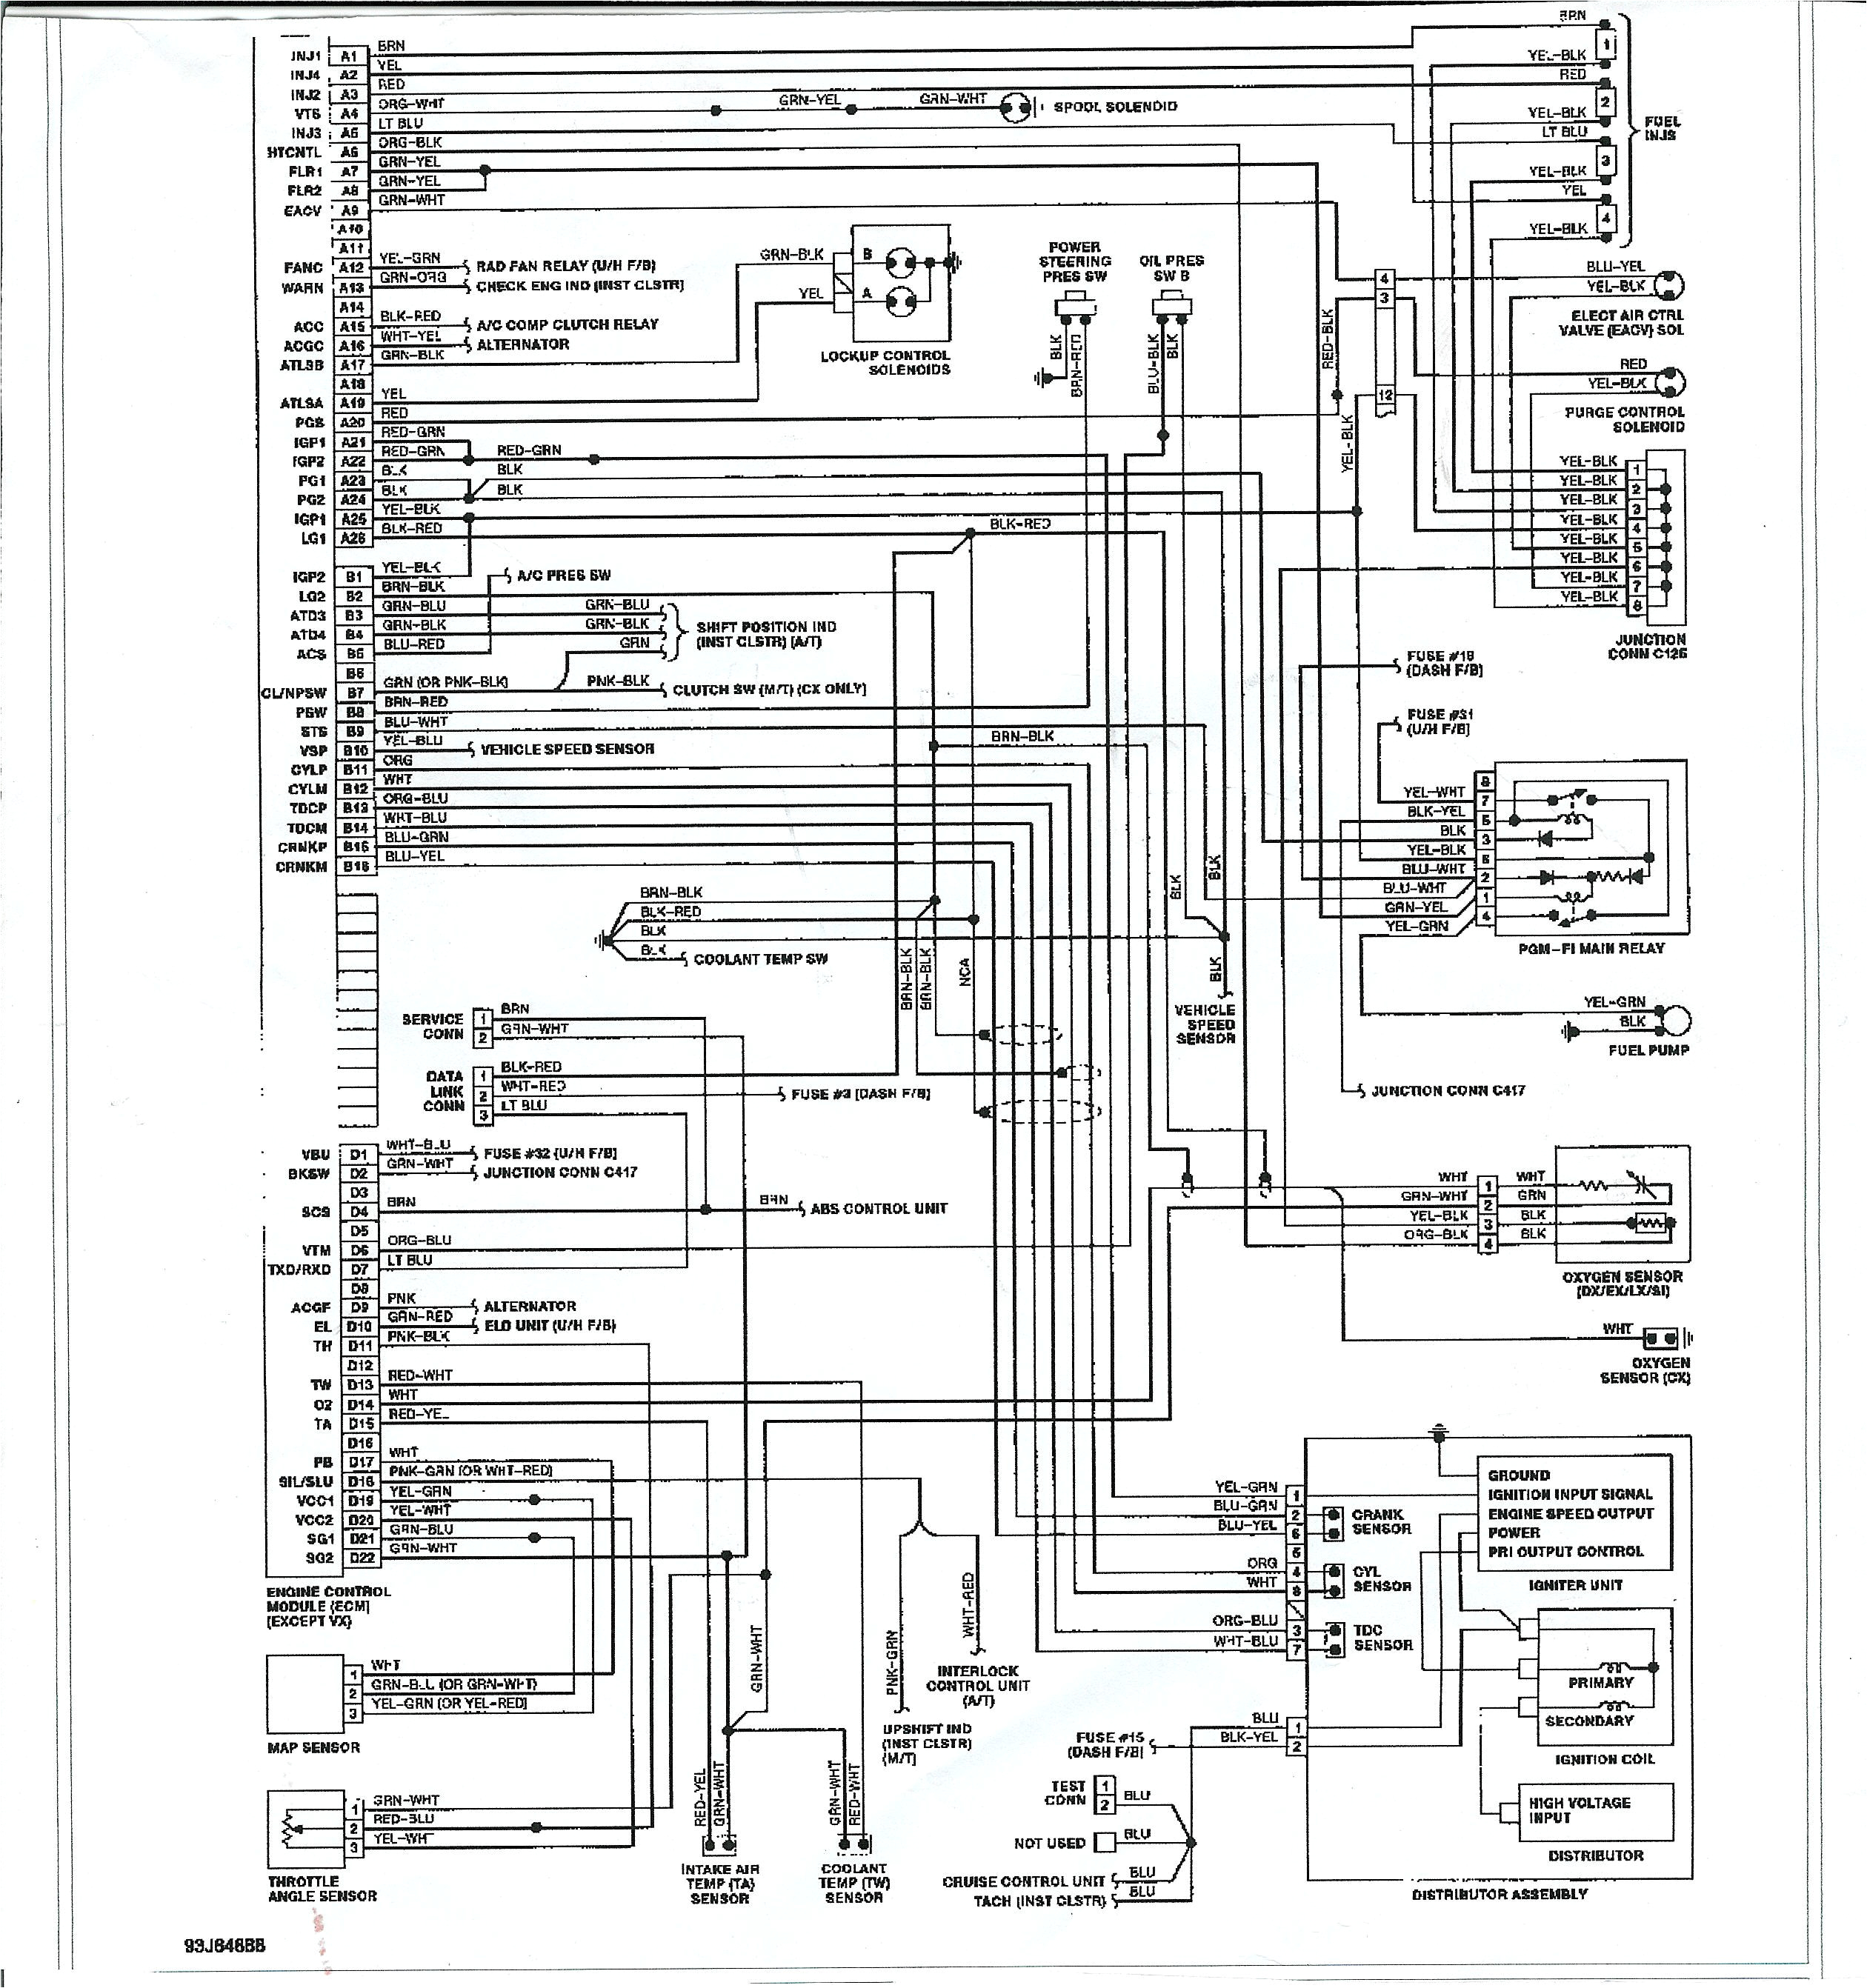 dc2 wiring diagram